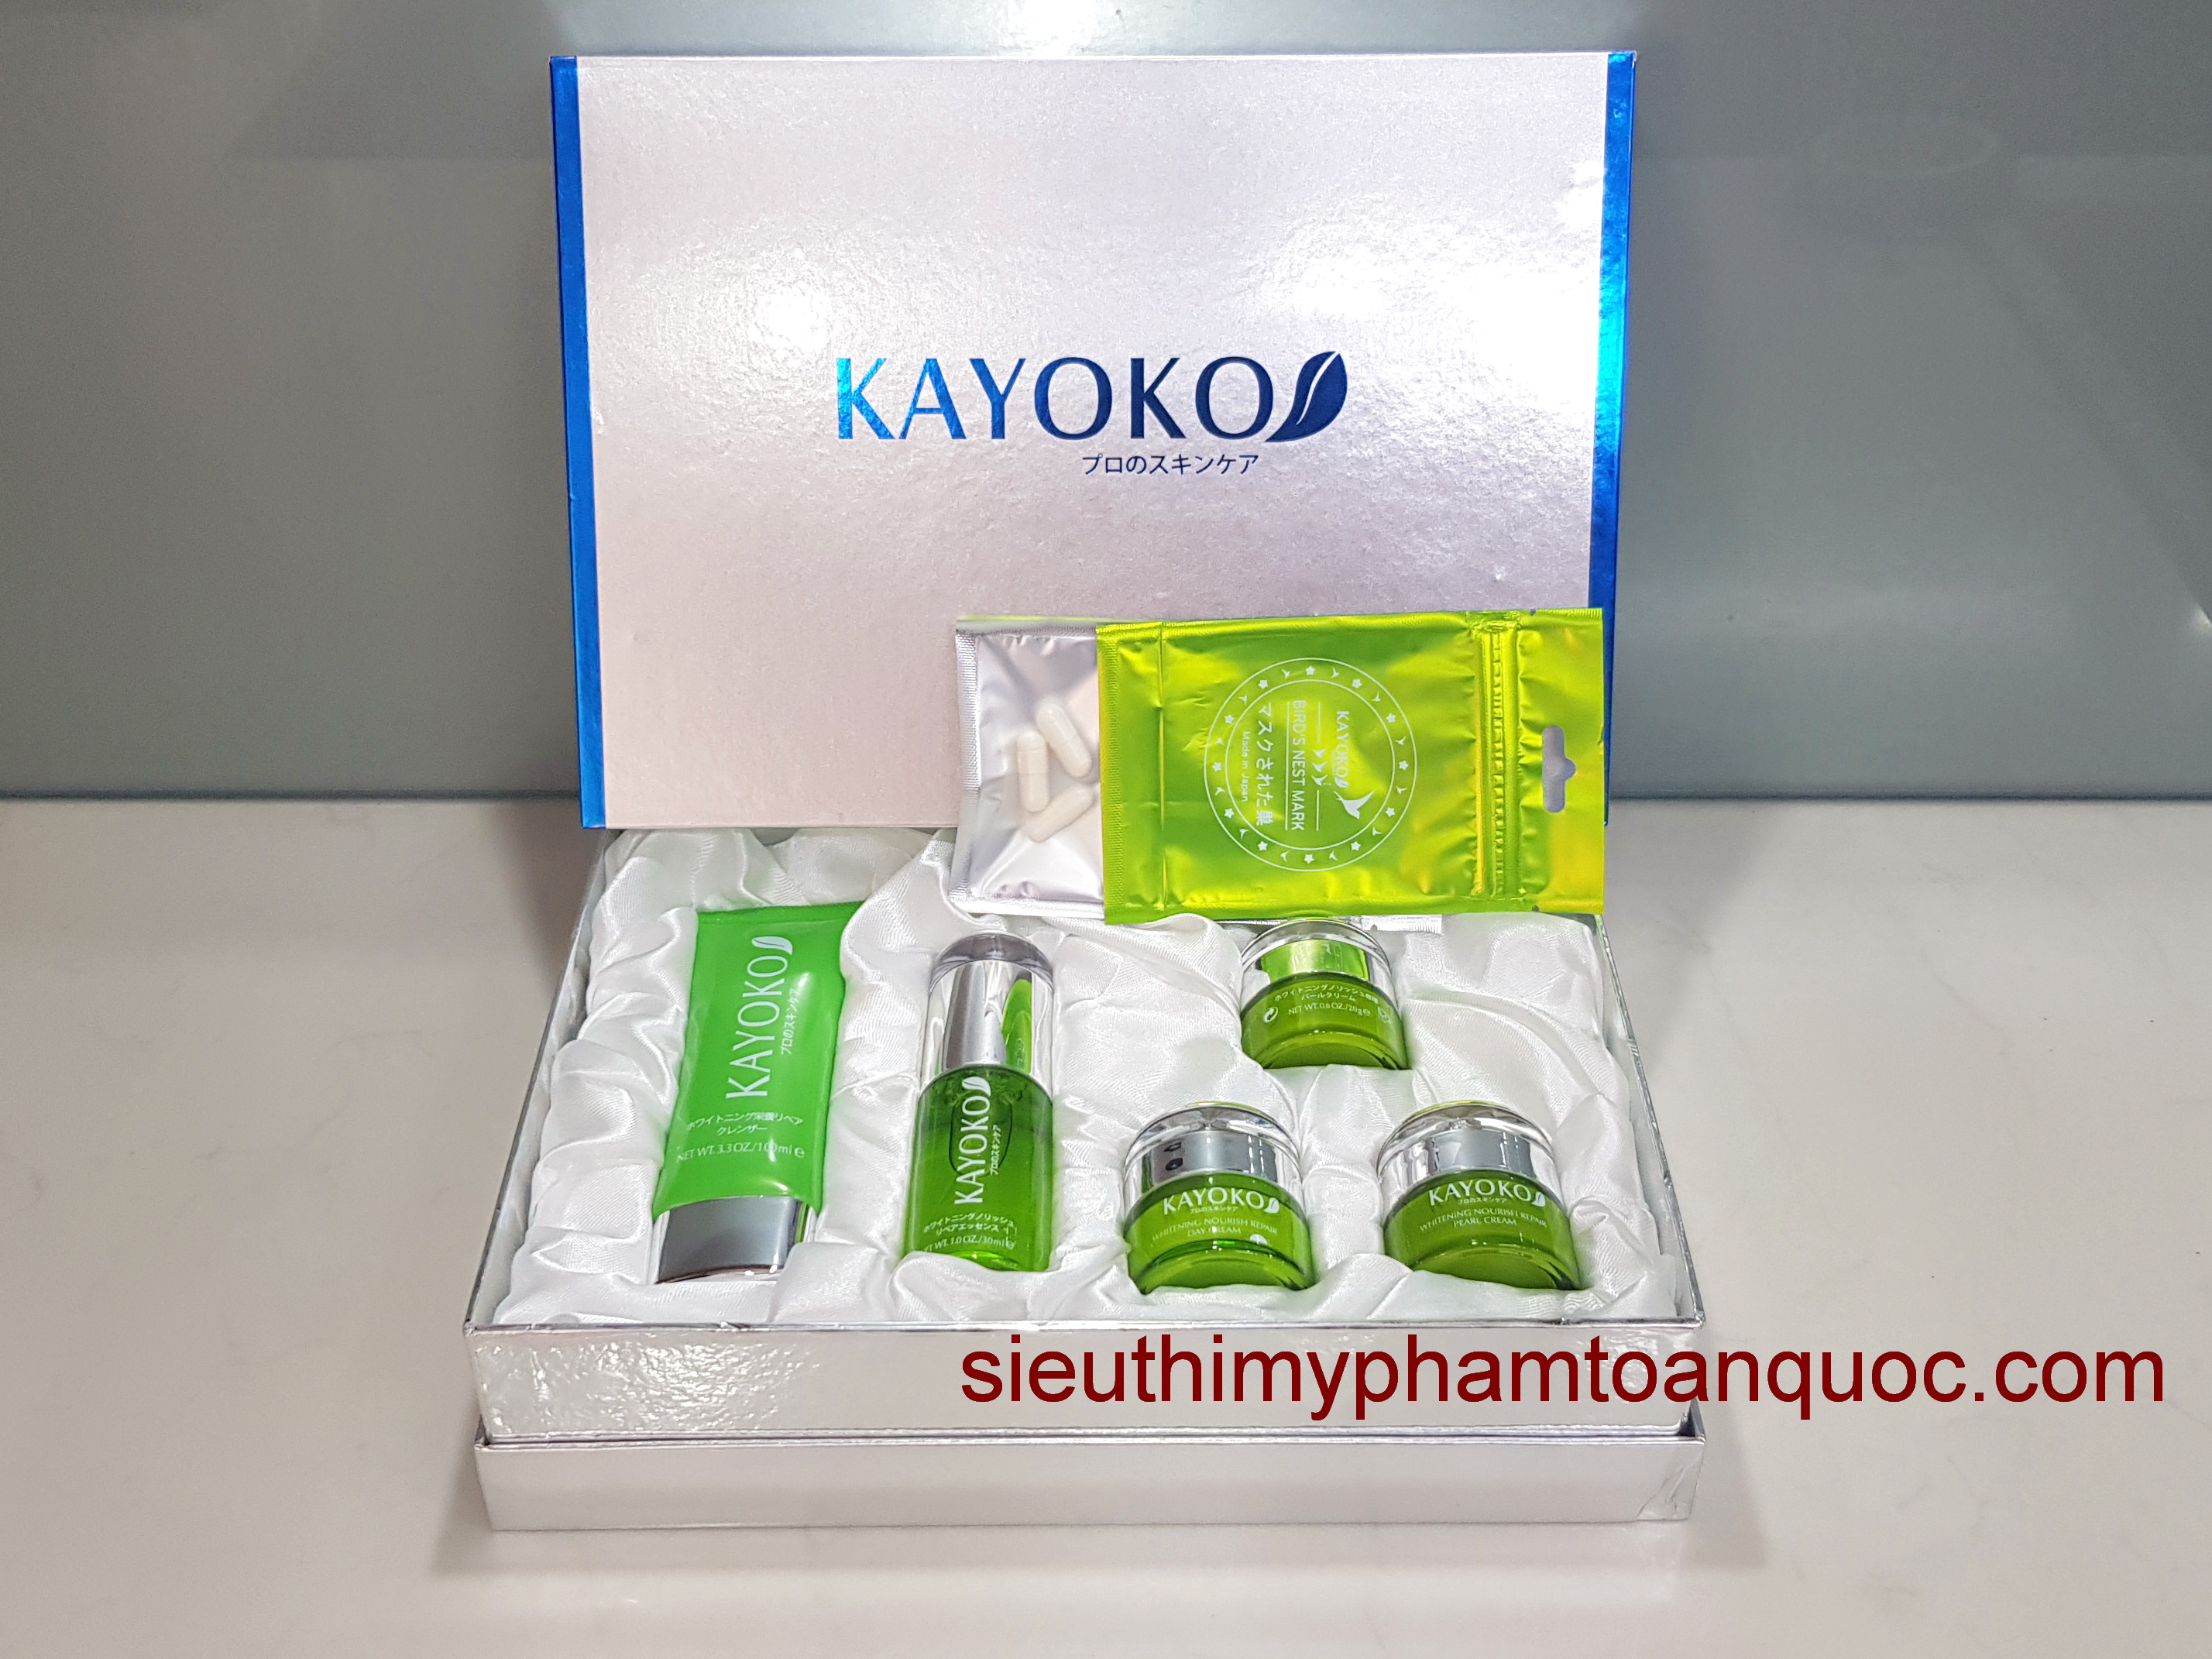 bán buôn mỹ phẩm kayoko 5in1, mỹ phẩm giá sỉ, mỹ phẩm trị nám, tàn nhang kết hợp làm trắng da Kayoko%205in1.